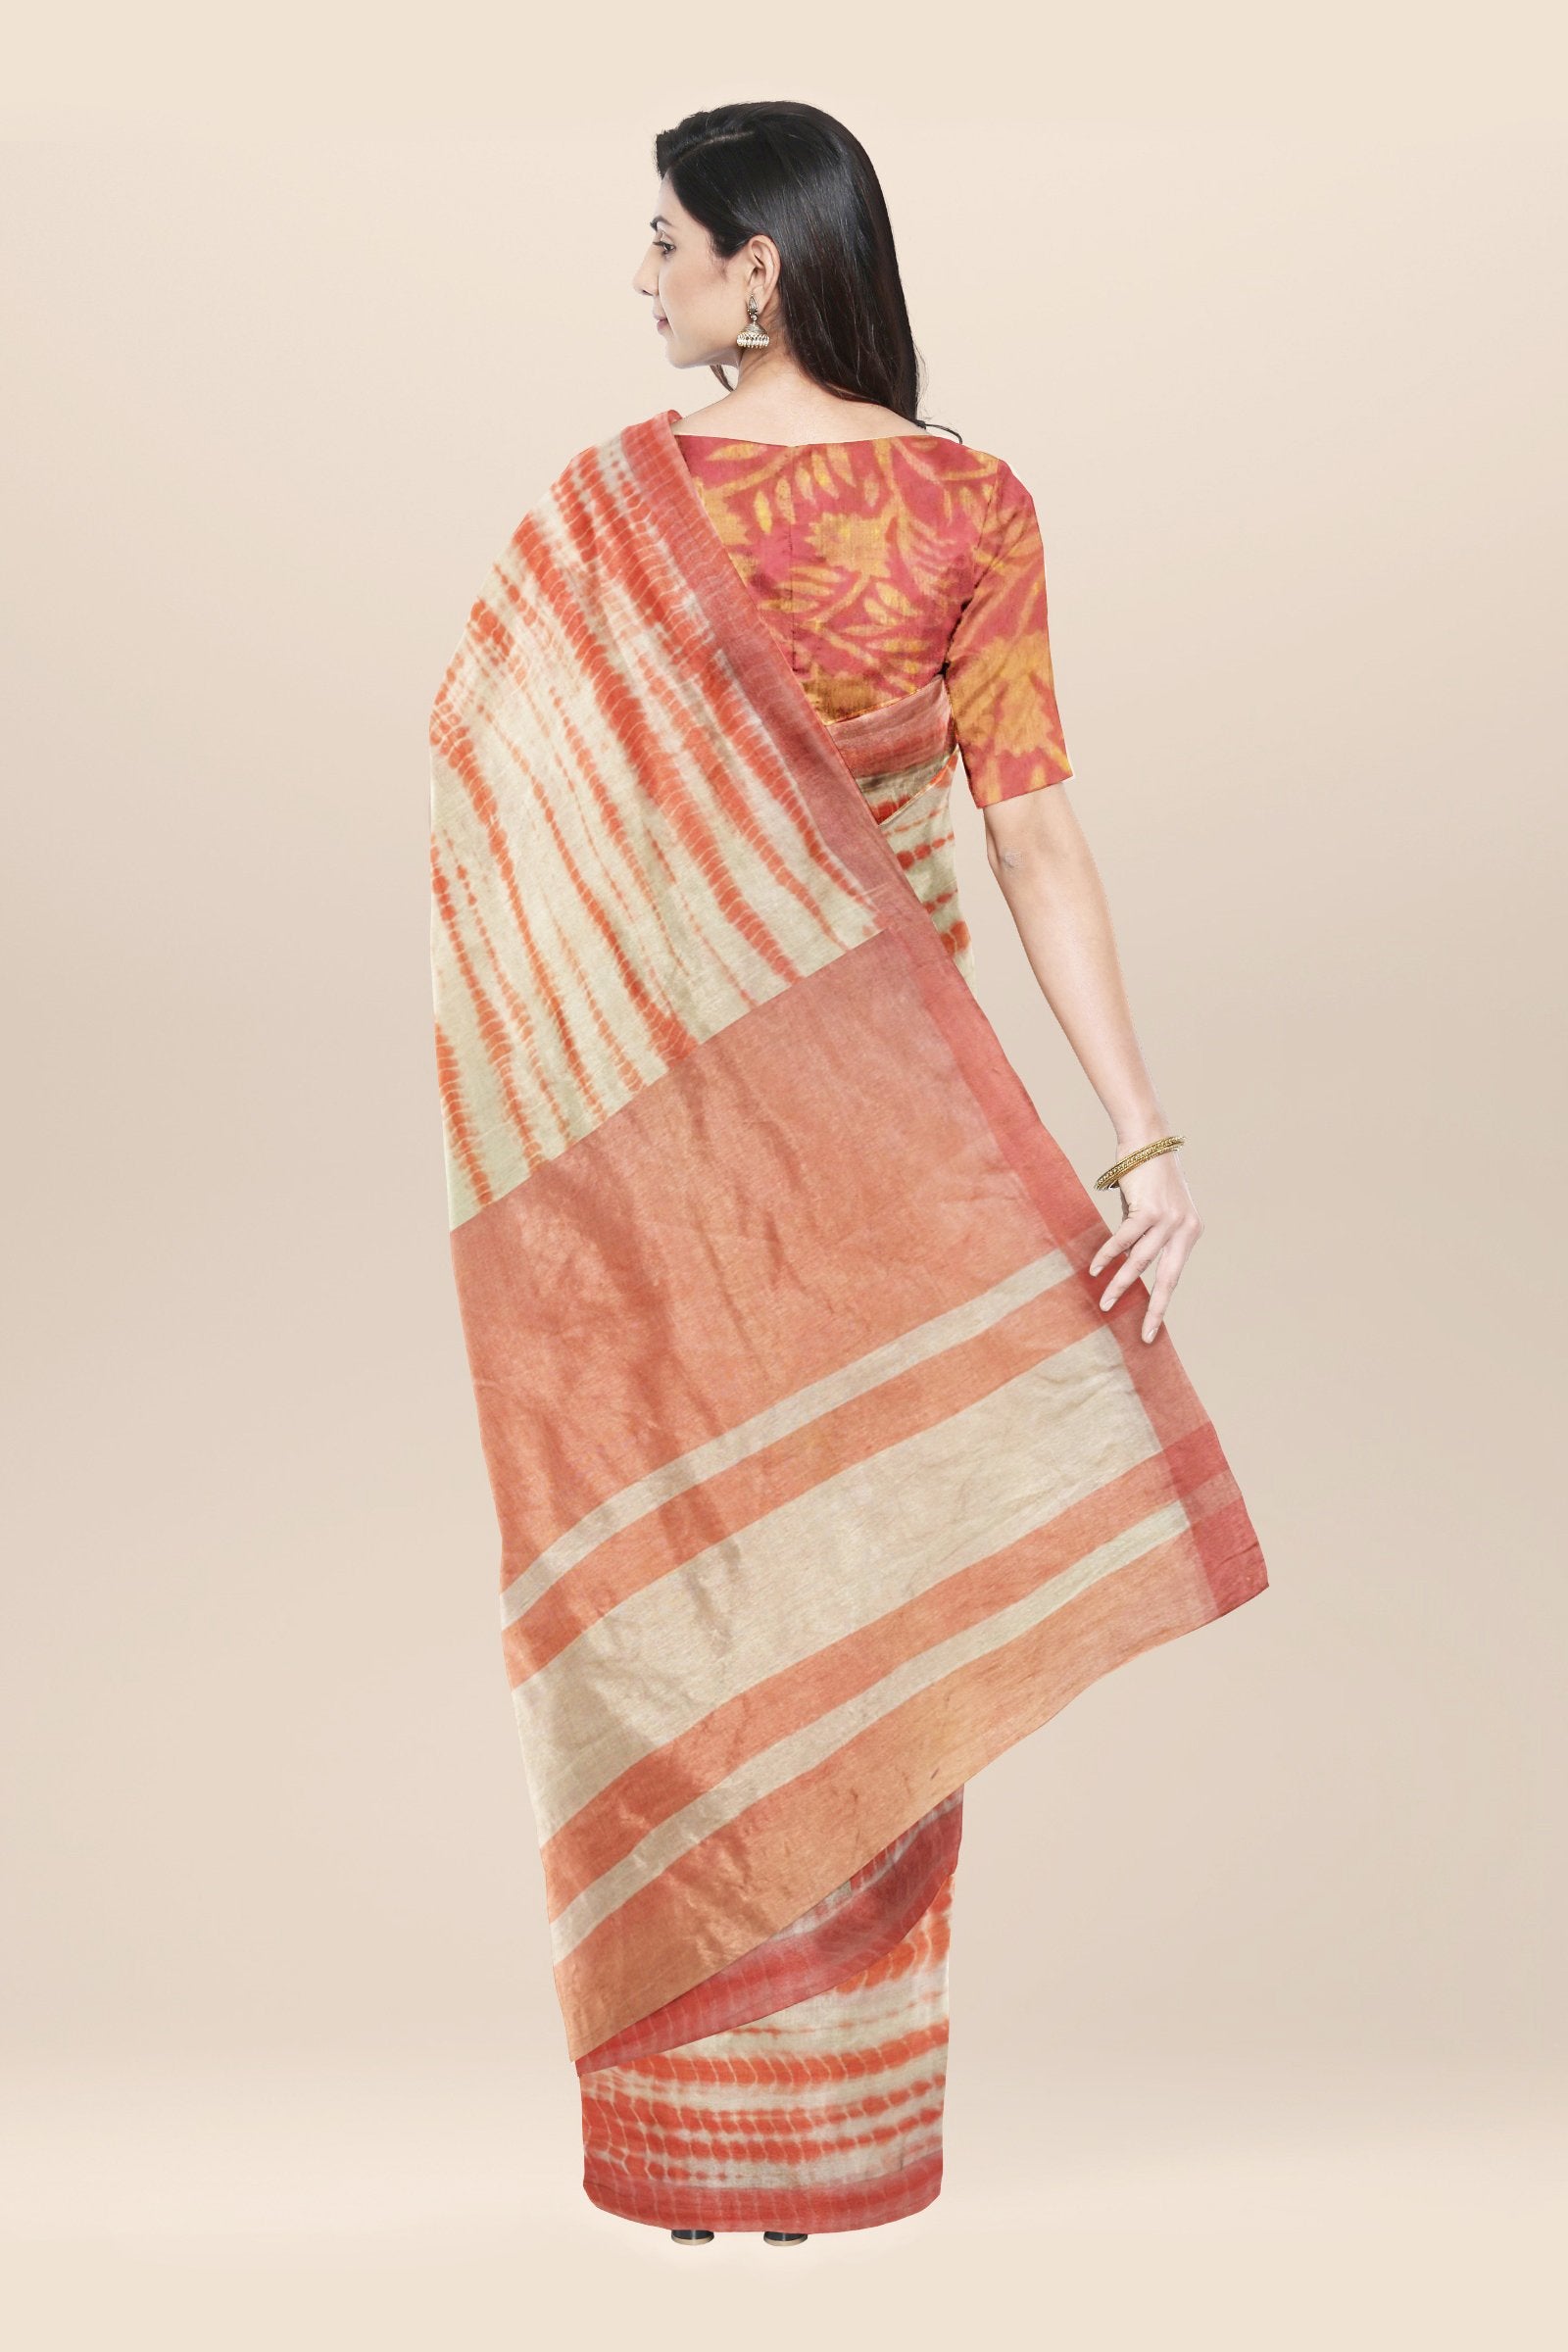 Beige handwoven tie dyed cotton saree